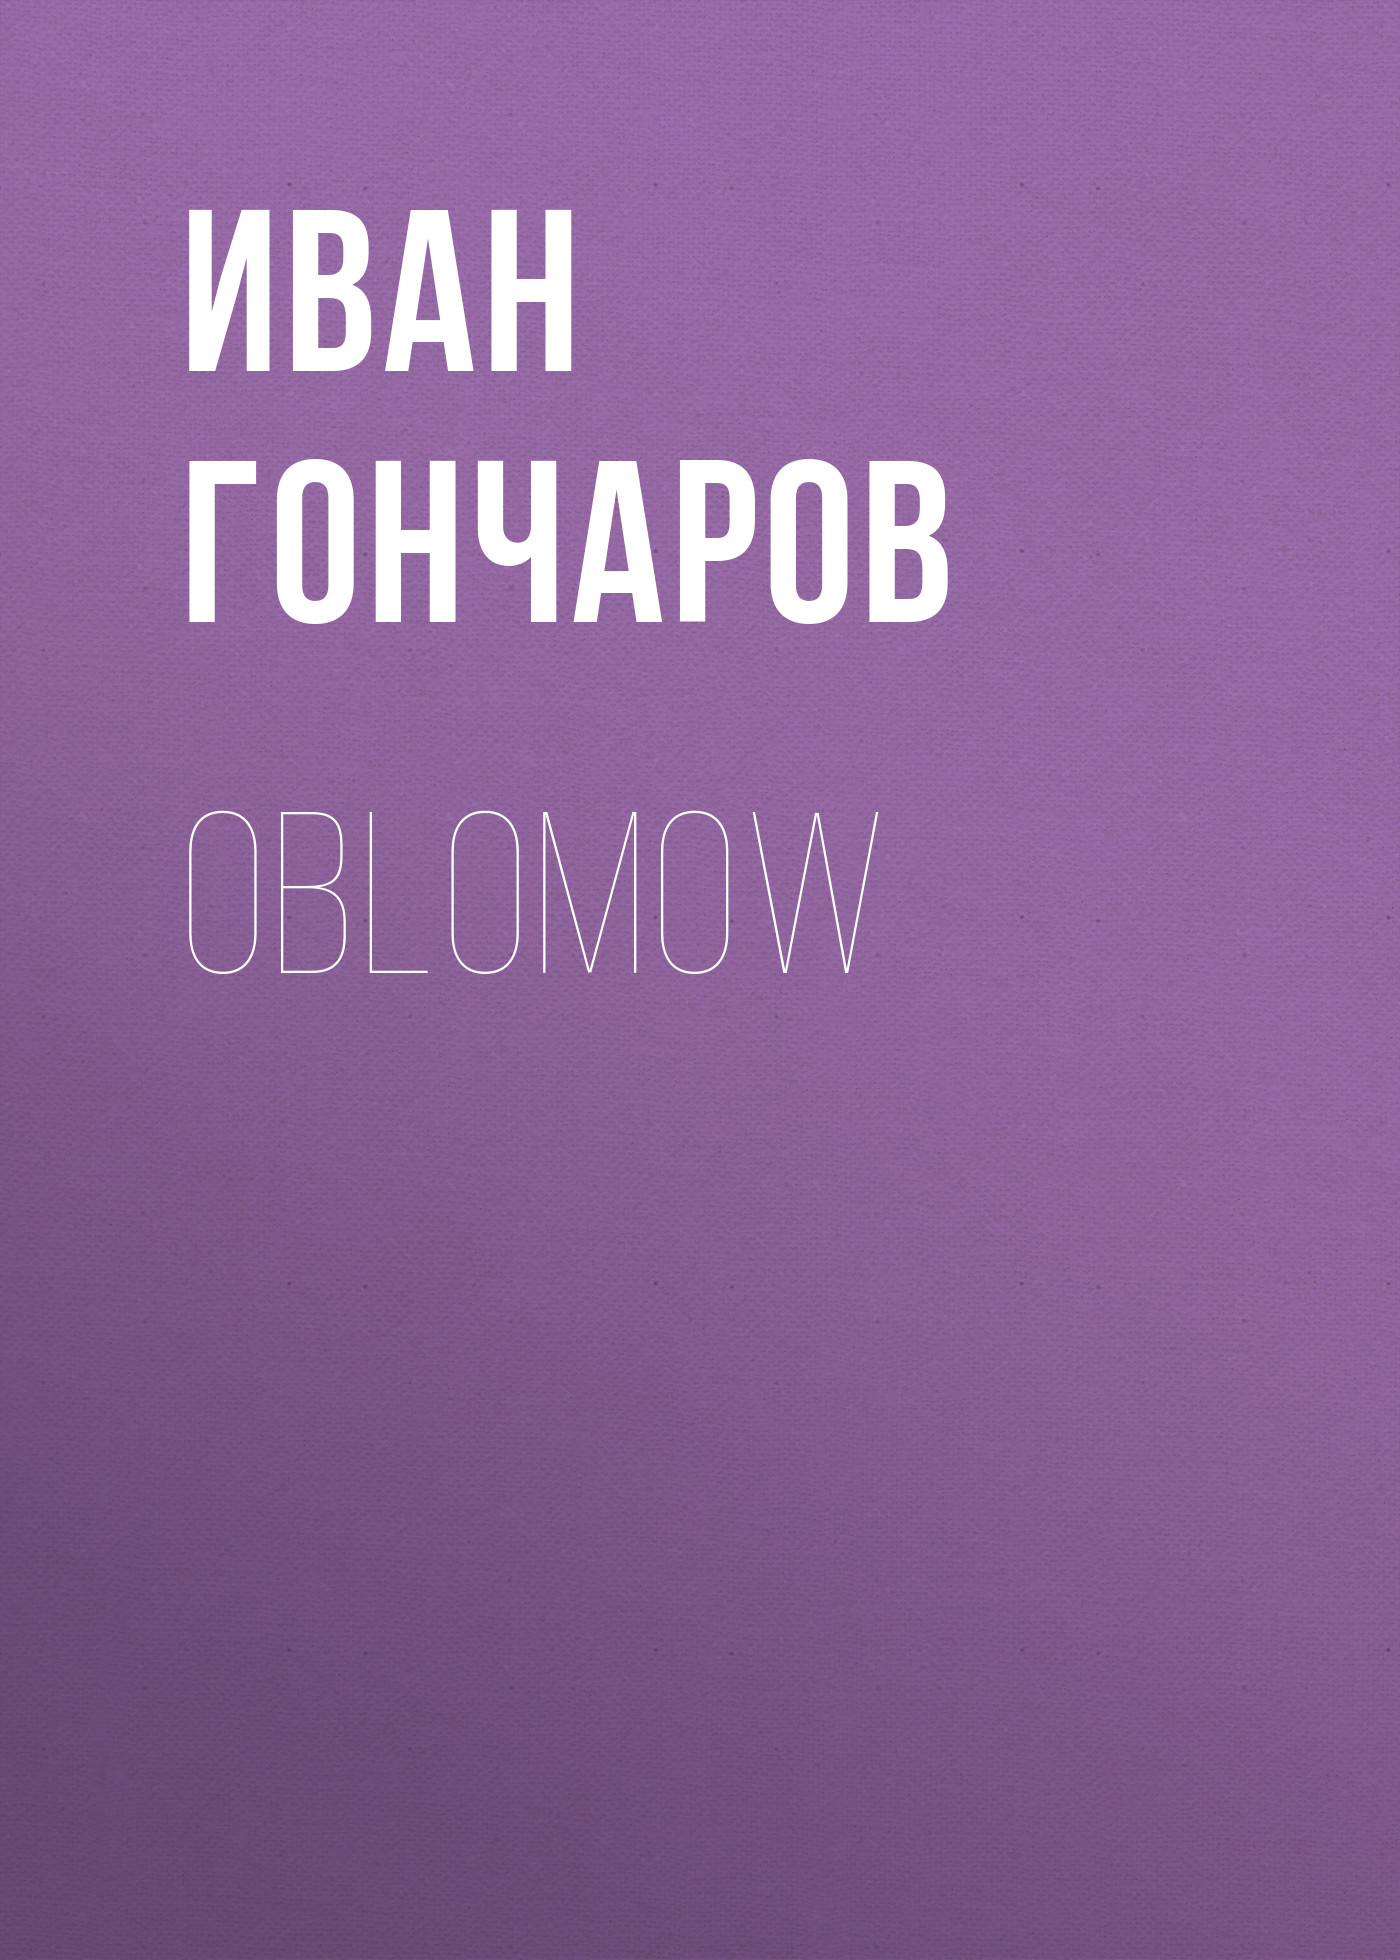 Книга Oblomow из серии , созданная Iwan Gontscharow, может относится к жанру Русская классика. Стоимость электронной книги Oblomow с идентификатором 48632060 составляет 0 руб.